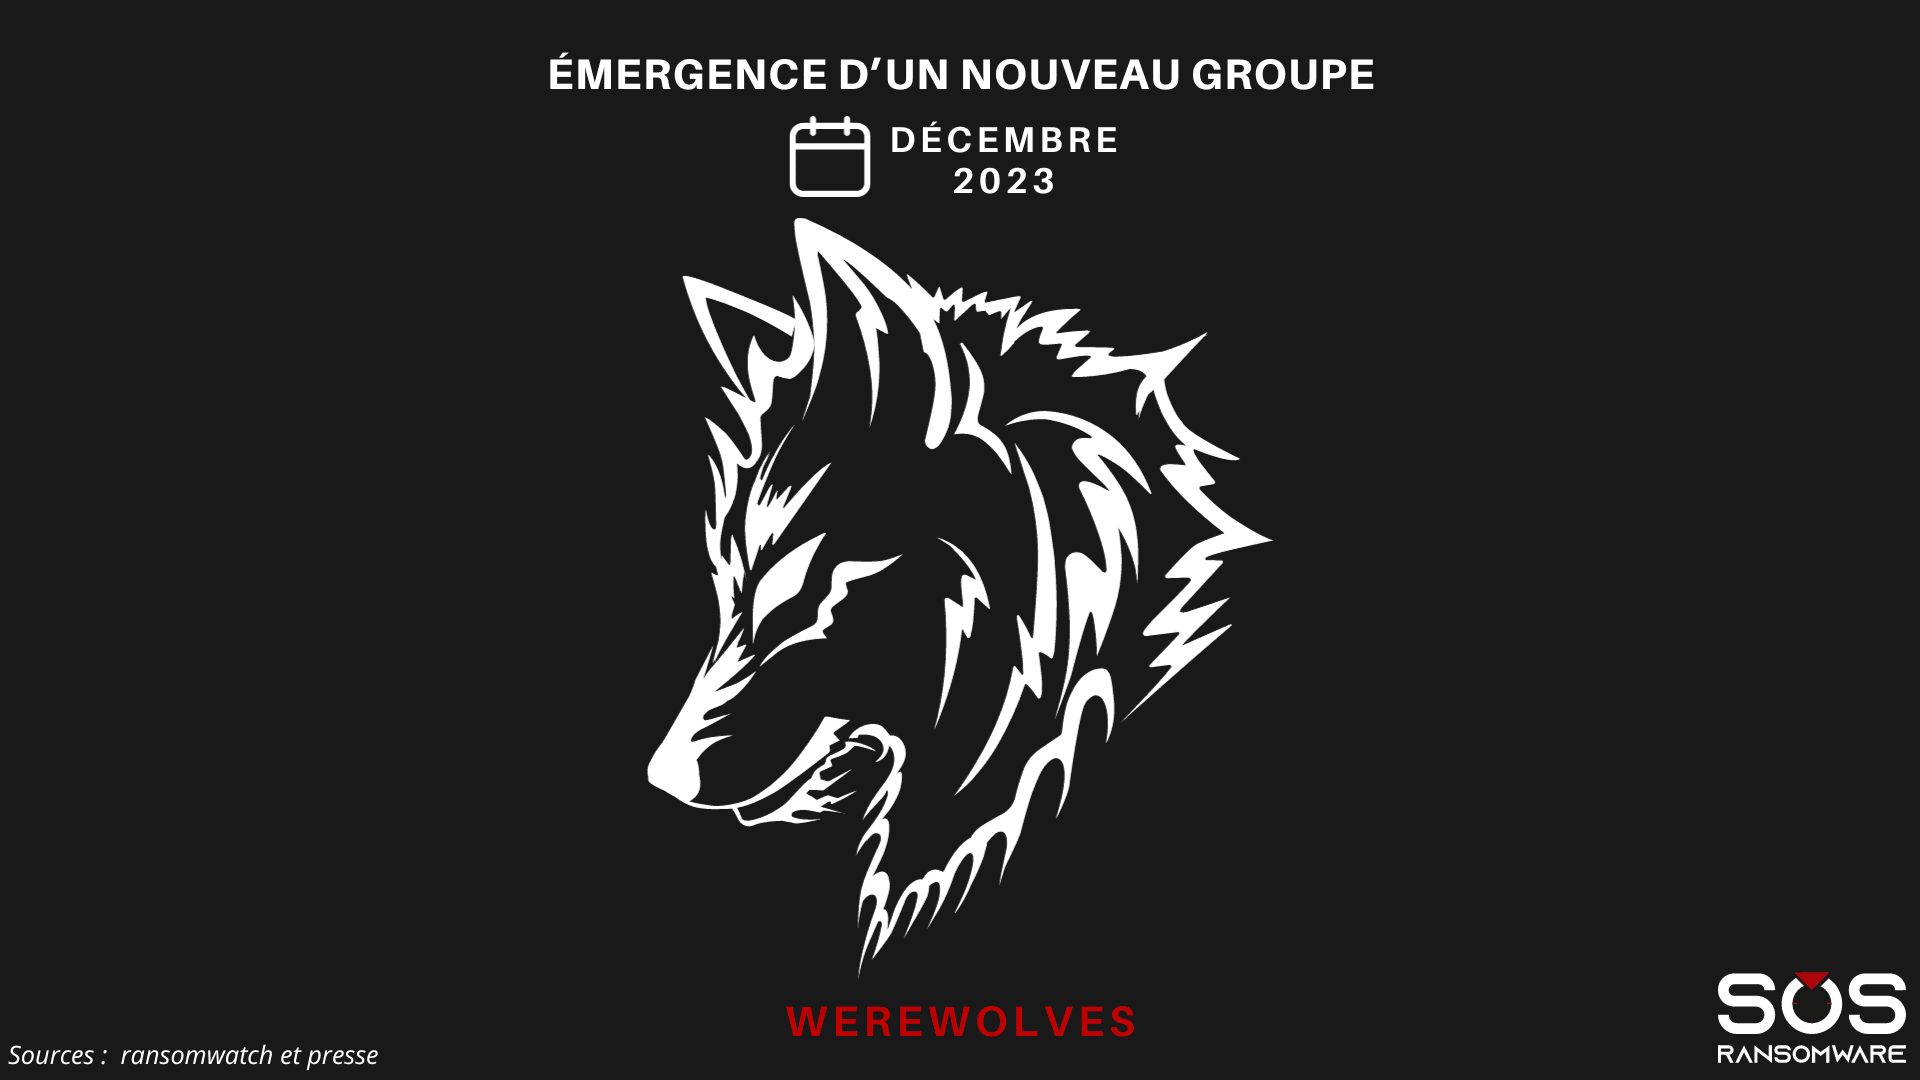 Werewolves groupes de ransomwares actifs en France Novembre 2023